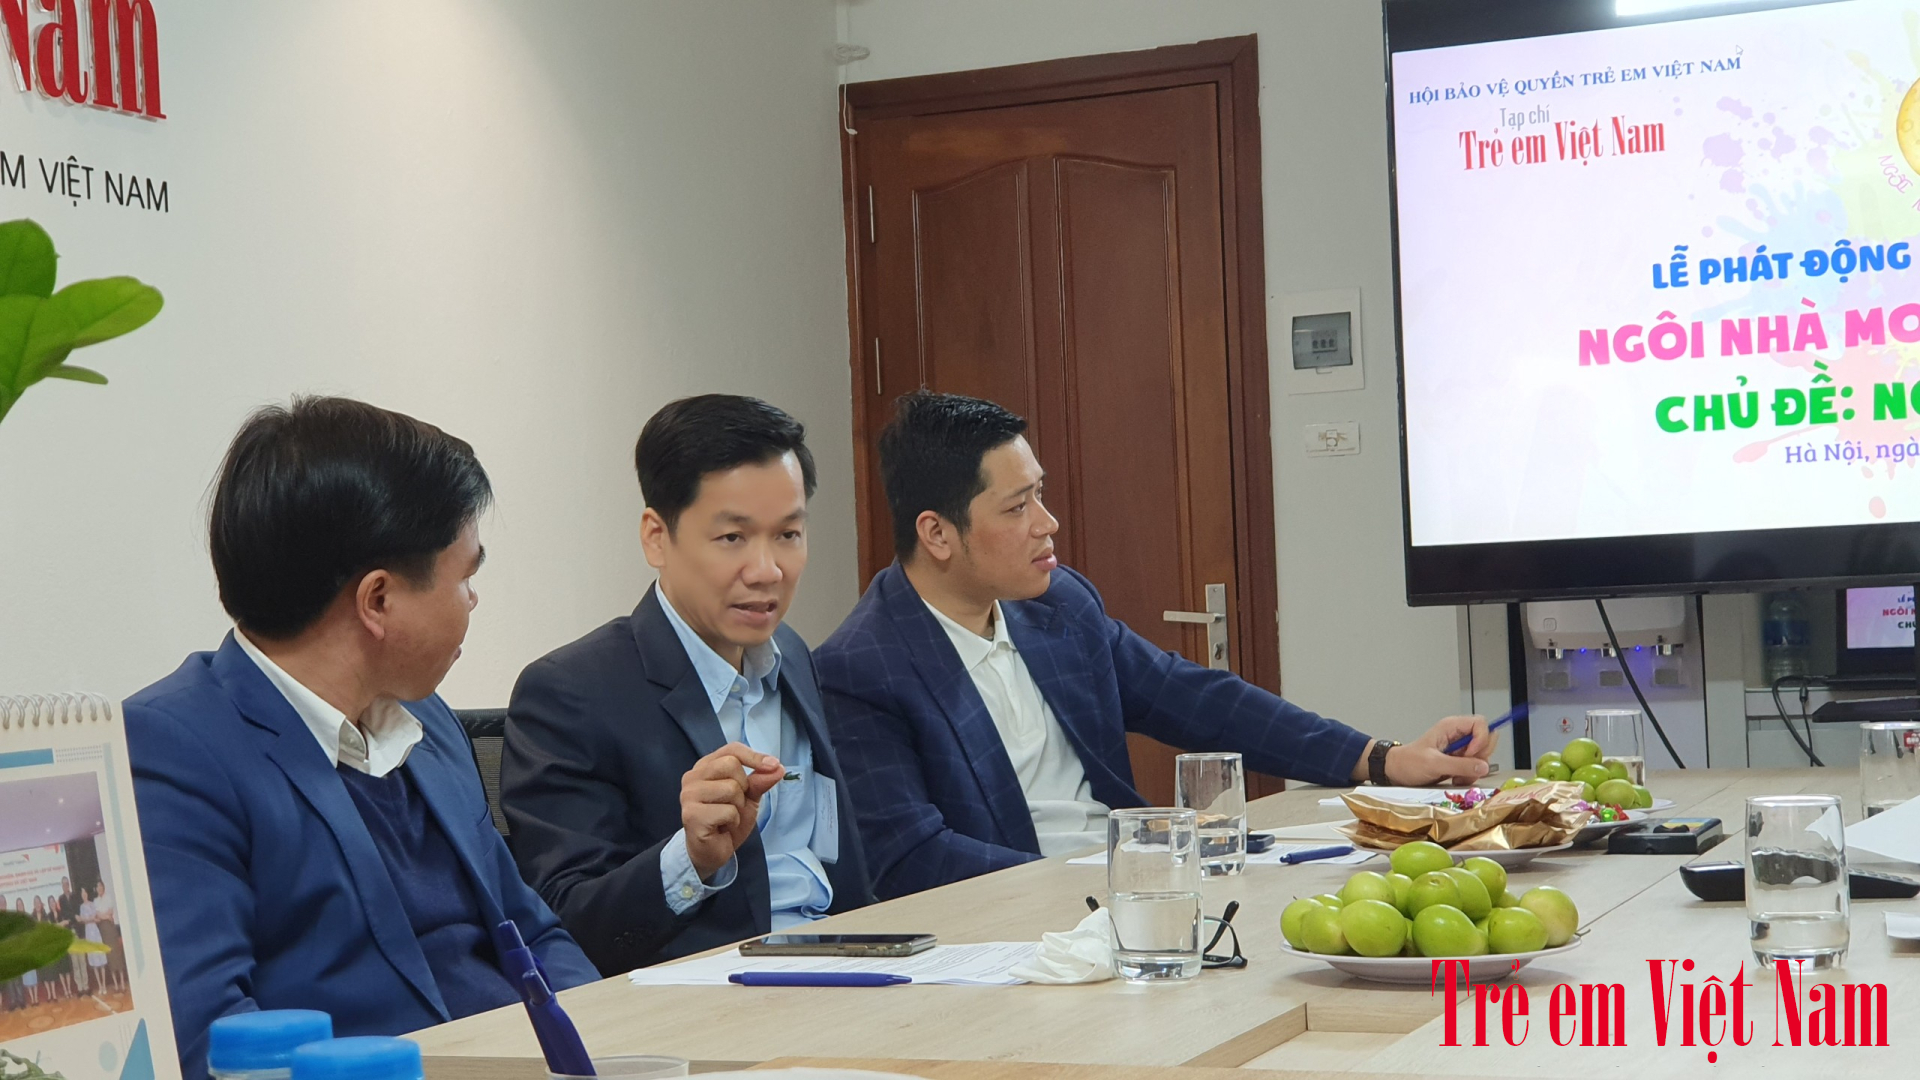 Ông Nguyễn Mạnh Hà - Chủ tịch Hội đồng quản trị Landora Group (giữa) đánh giá cao về tính nhân văn và ý nghĩa của Cuộc thi vẽ tranh “Ngôi nhà mơ ước” năm 2024 với chủ đề "Ngôi nhà xanh" (Ảnh: Duy Cường).